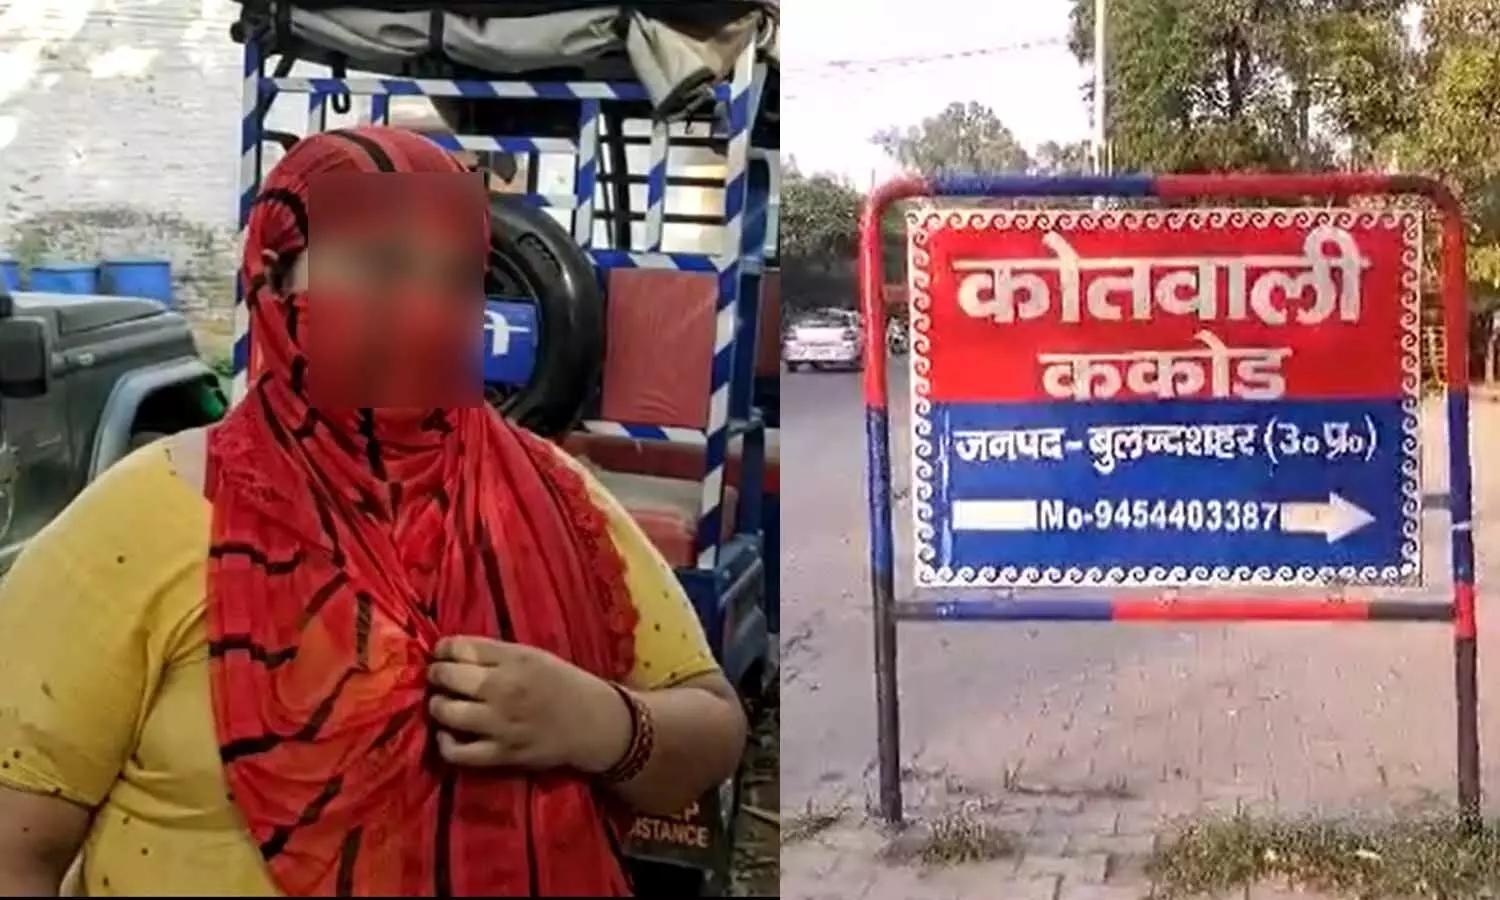 Bulandshahr Crime News: रक्षक बना भक्षक! महिला ने कांस्टेबल पर लगाया रेप का आरोप, थाने में हंगामा